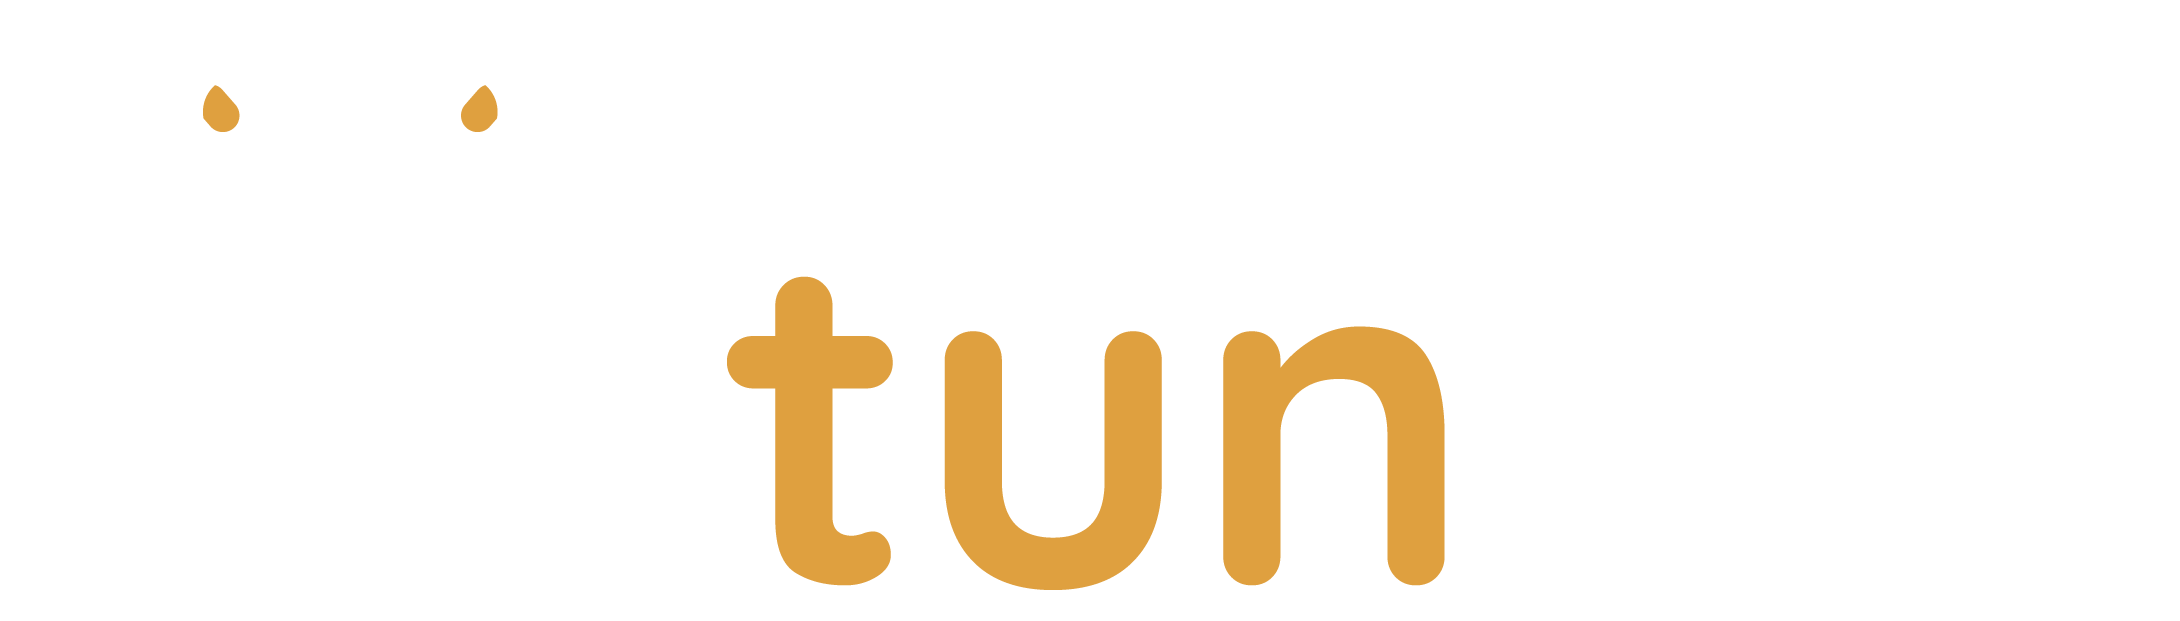 Logotipo Tuntun